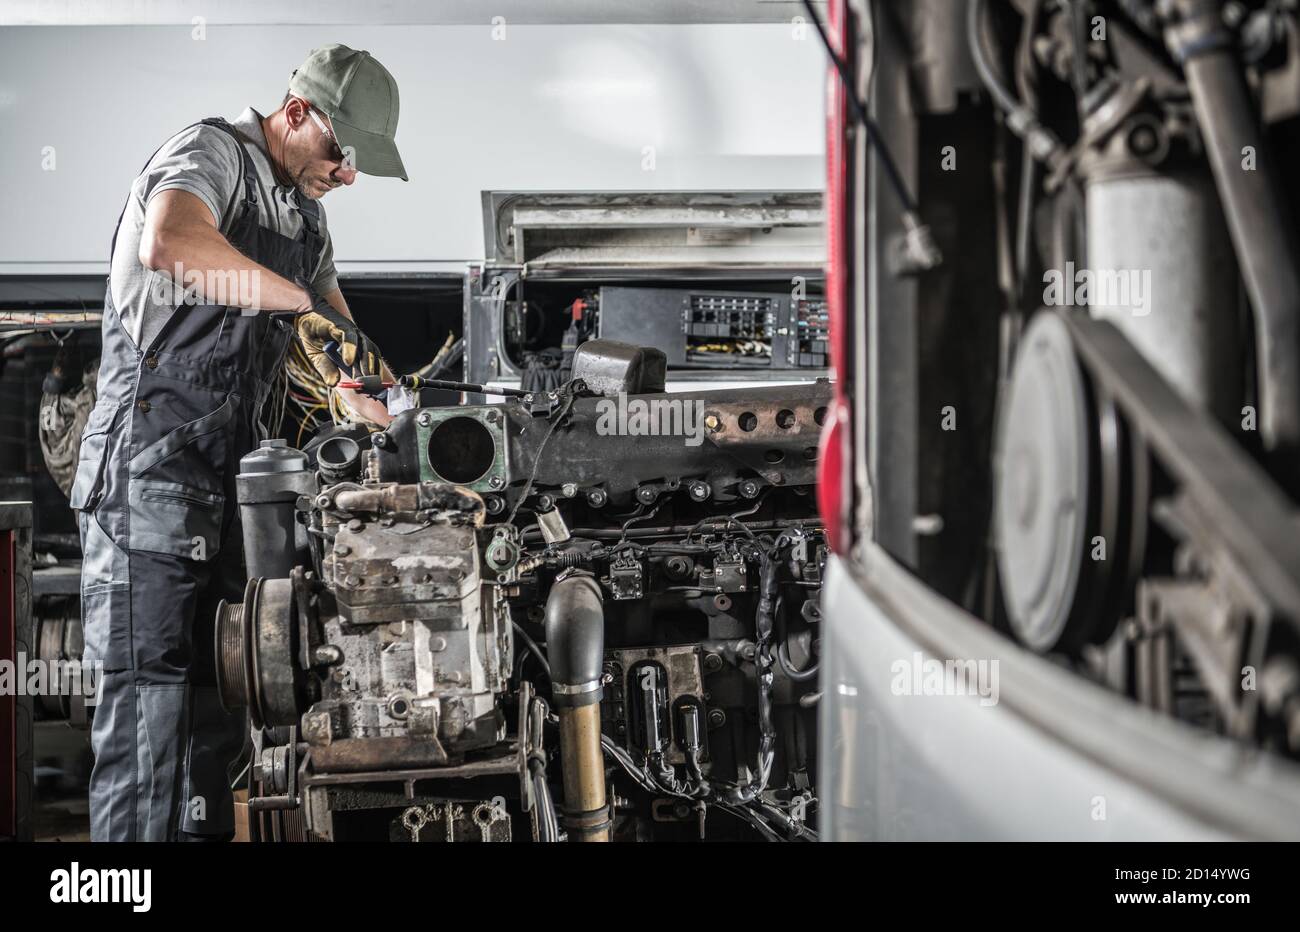 Professioneller Kaukasischer Kfz-Mechaniker in seinen 40er Jahren, der leistungsstarke Hochleistungs-Lkw- oder Bus-Dieselmotoren im Truck Service Center repariert. Transporta Stockfoto